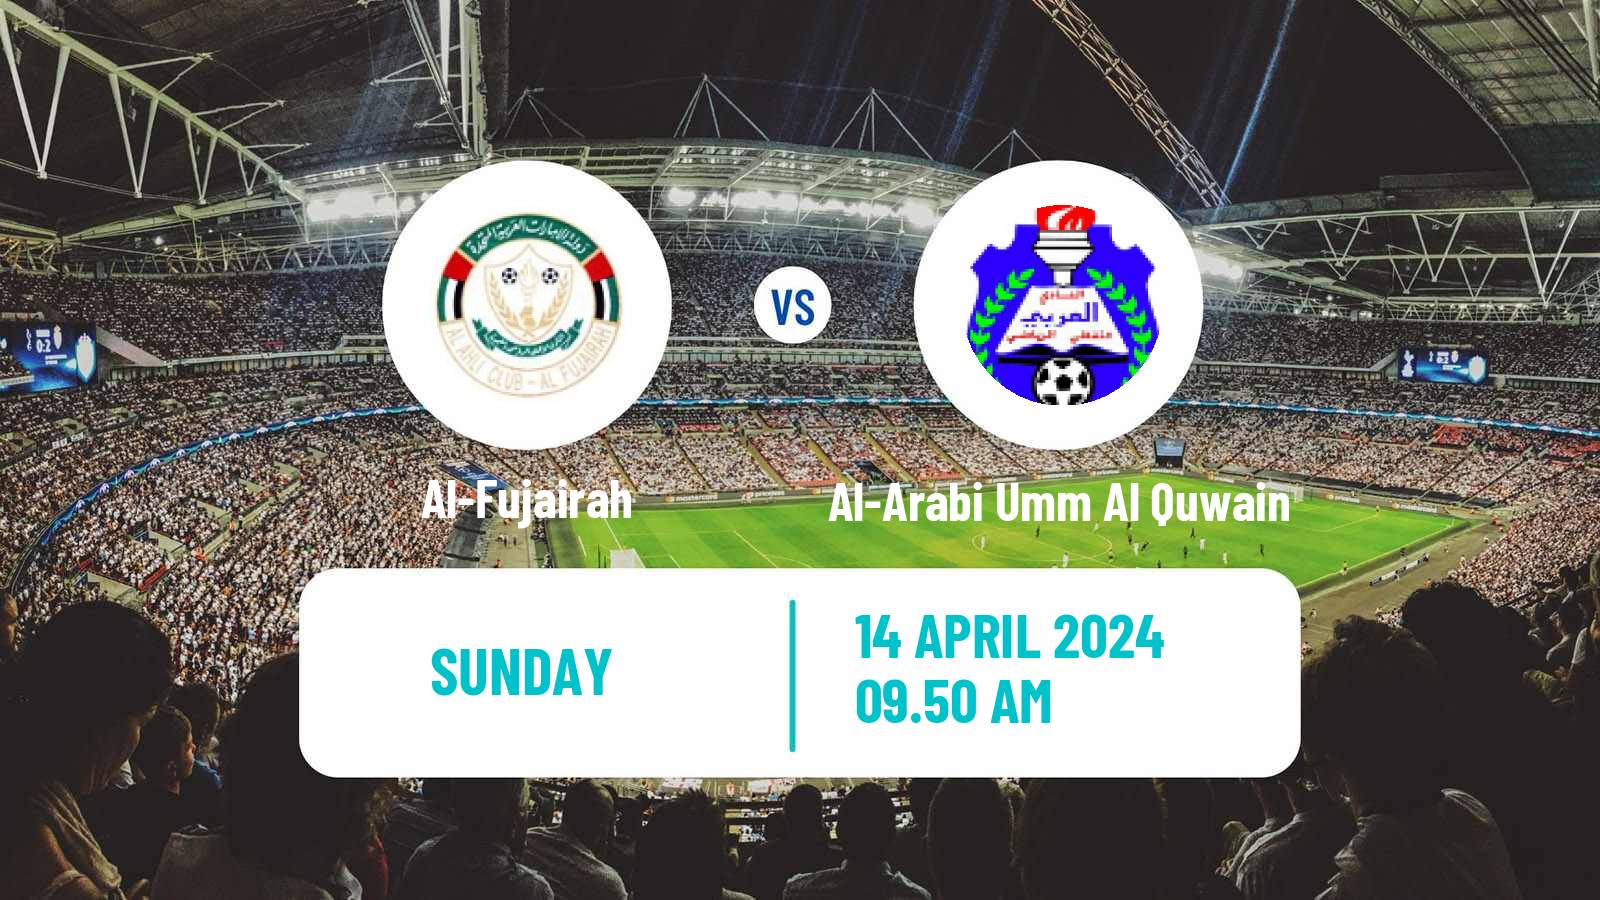 Soccer UAE Division 1 Al-Fujairah - Al-Arabi Umm Al Quwain